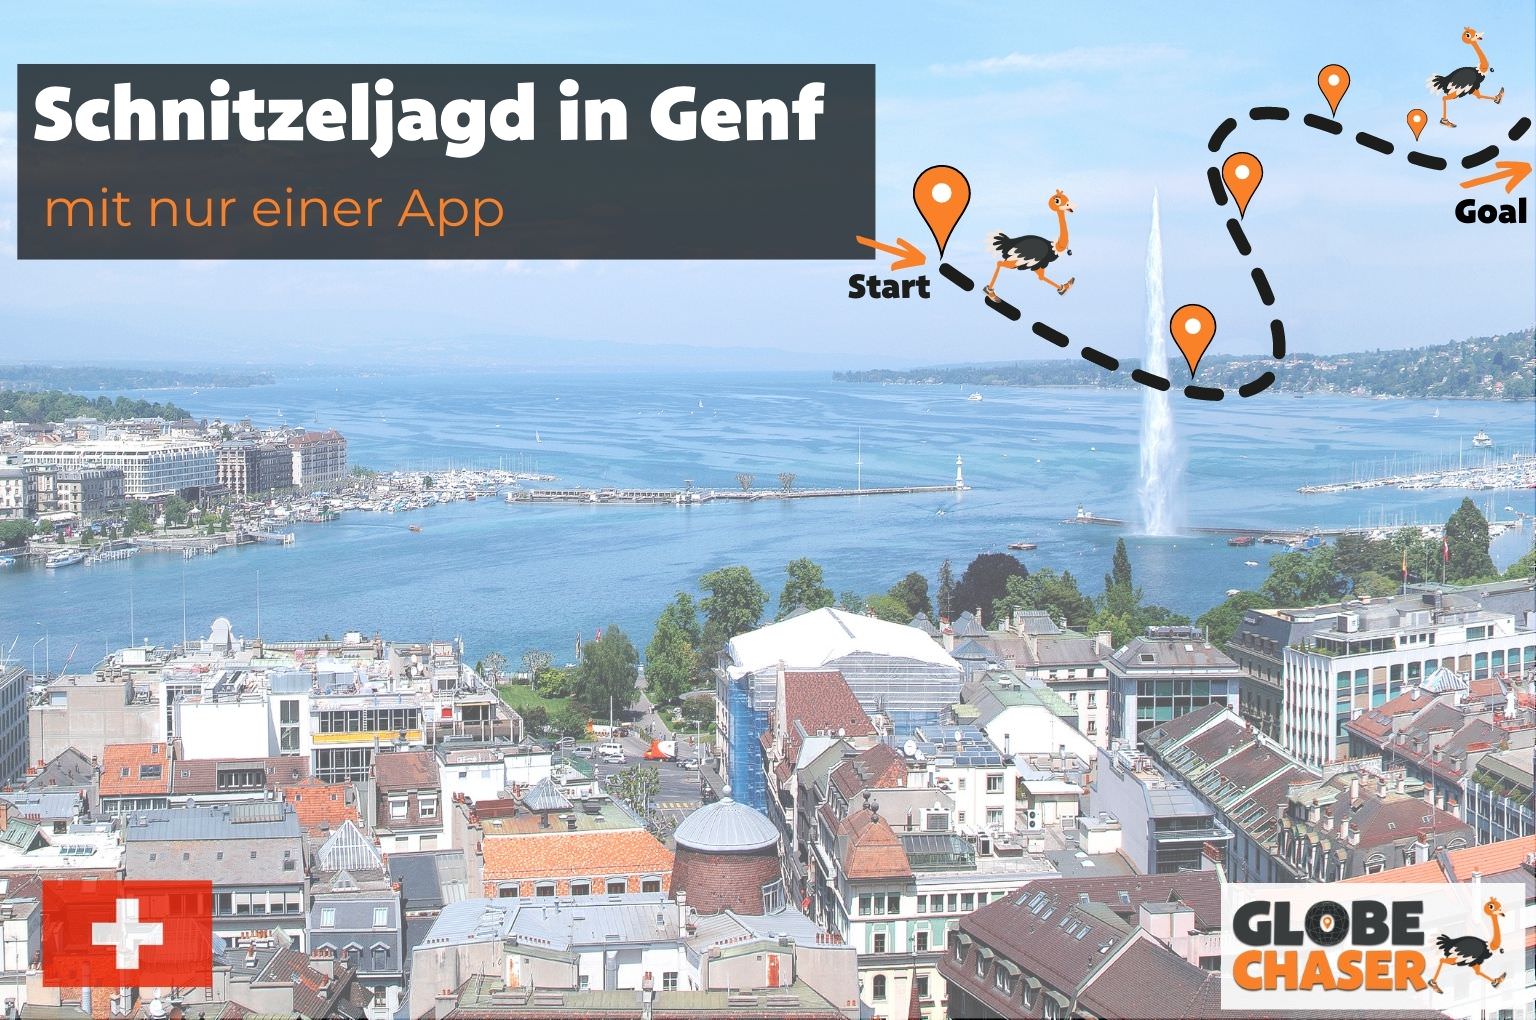 Schnitzeljagd in Genf mit App - Globe Chaser Erlebnisse Schweiz